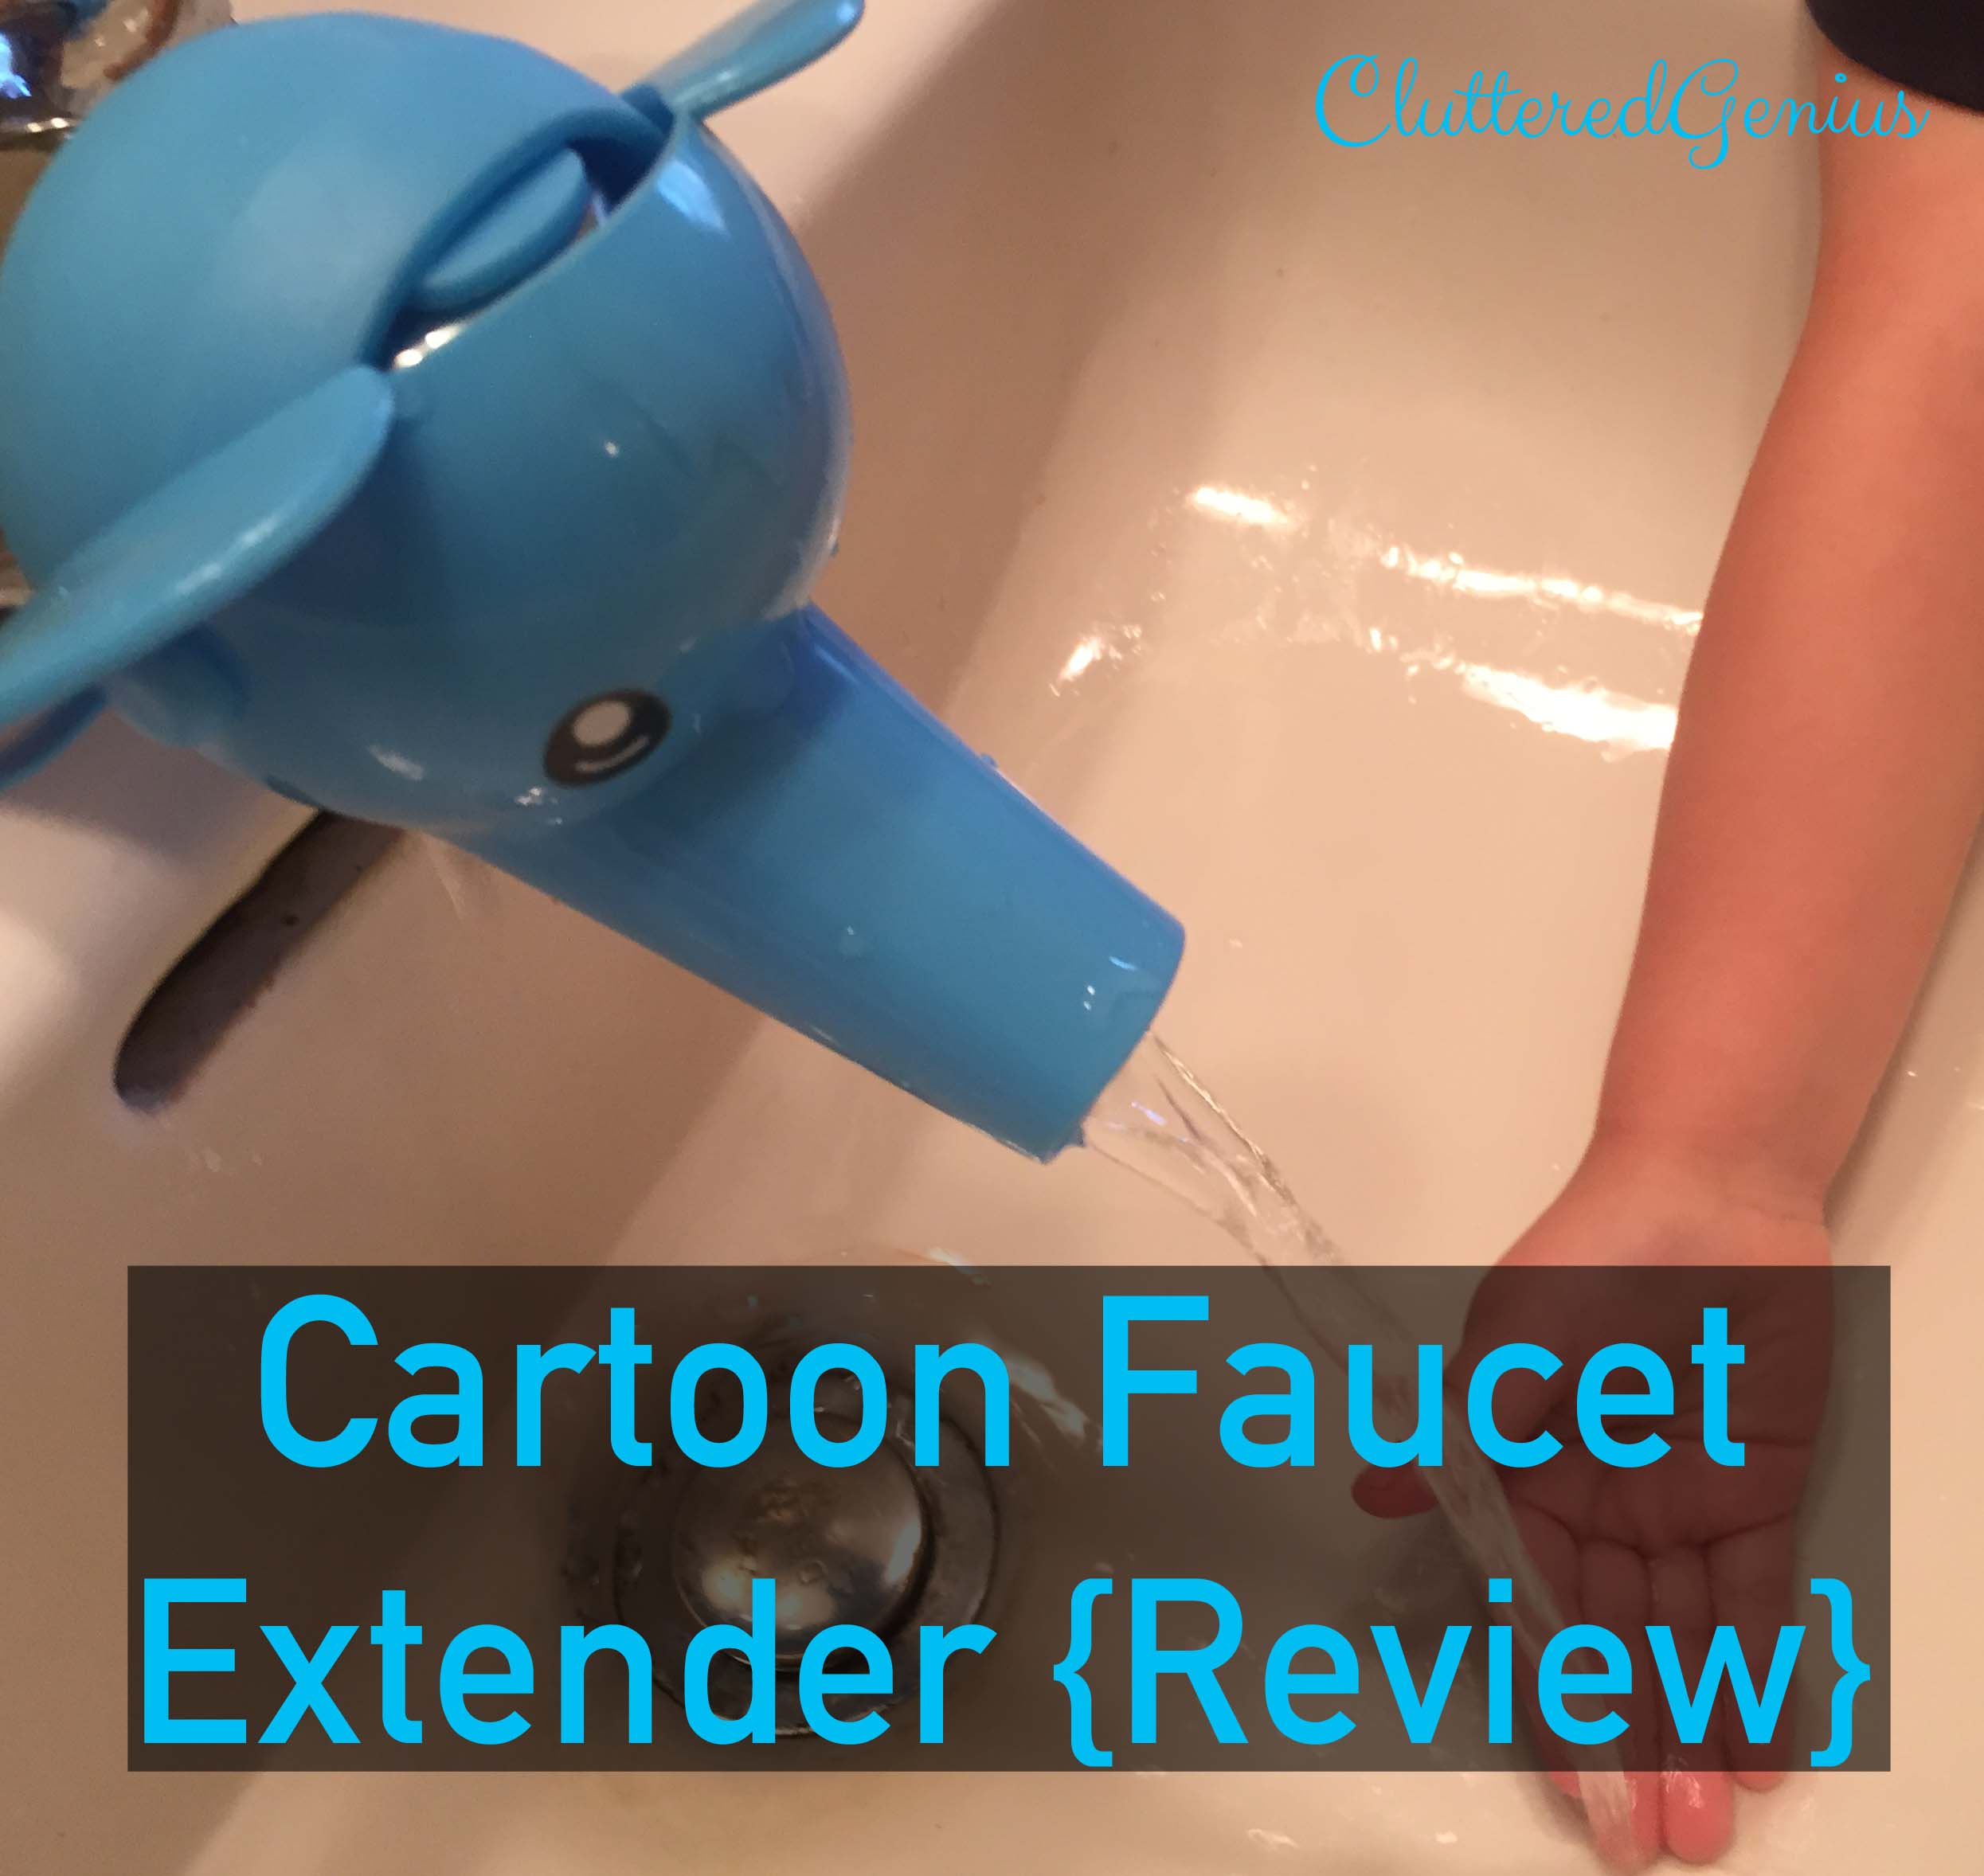 Cartoon Faucet Extender (Review)